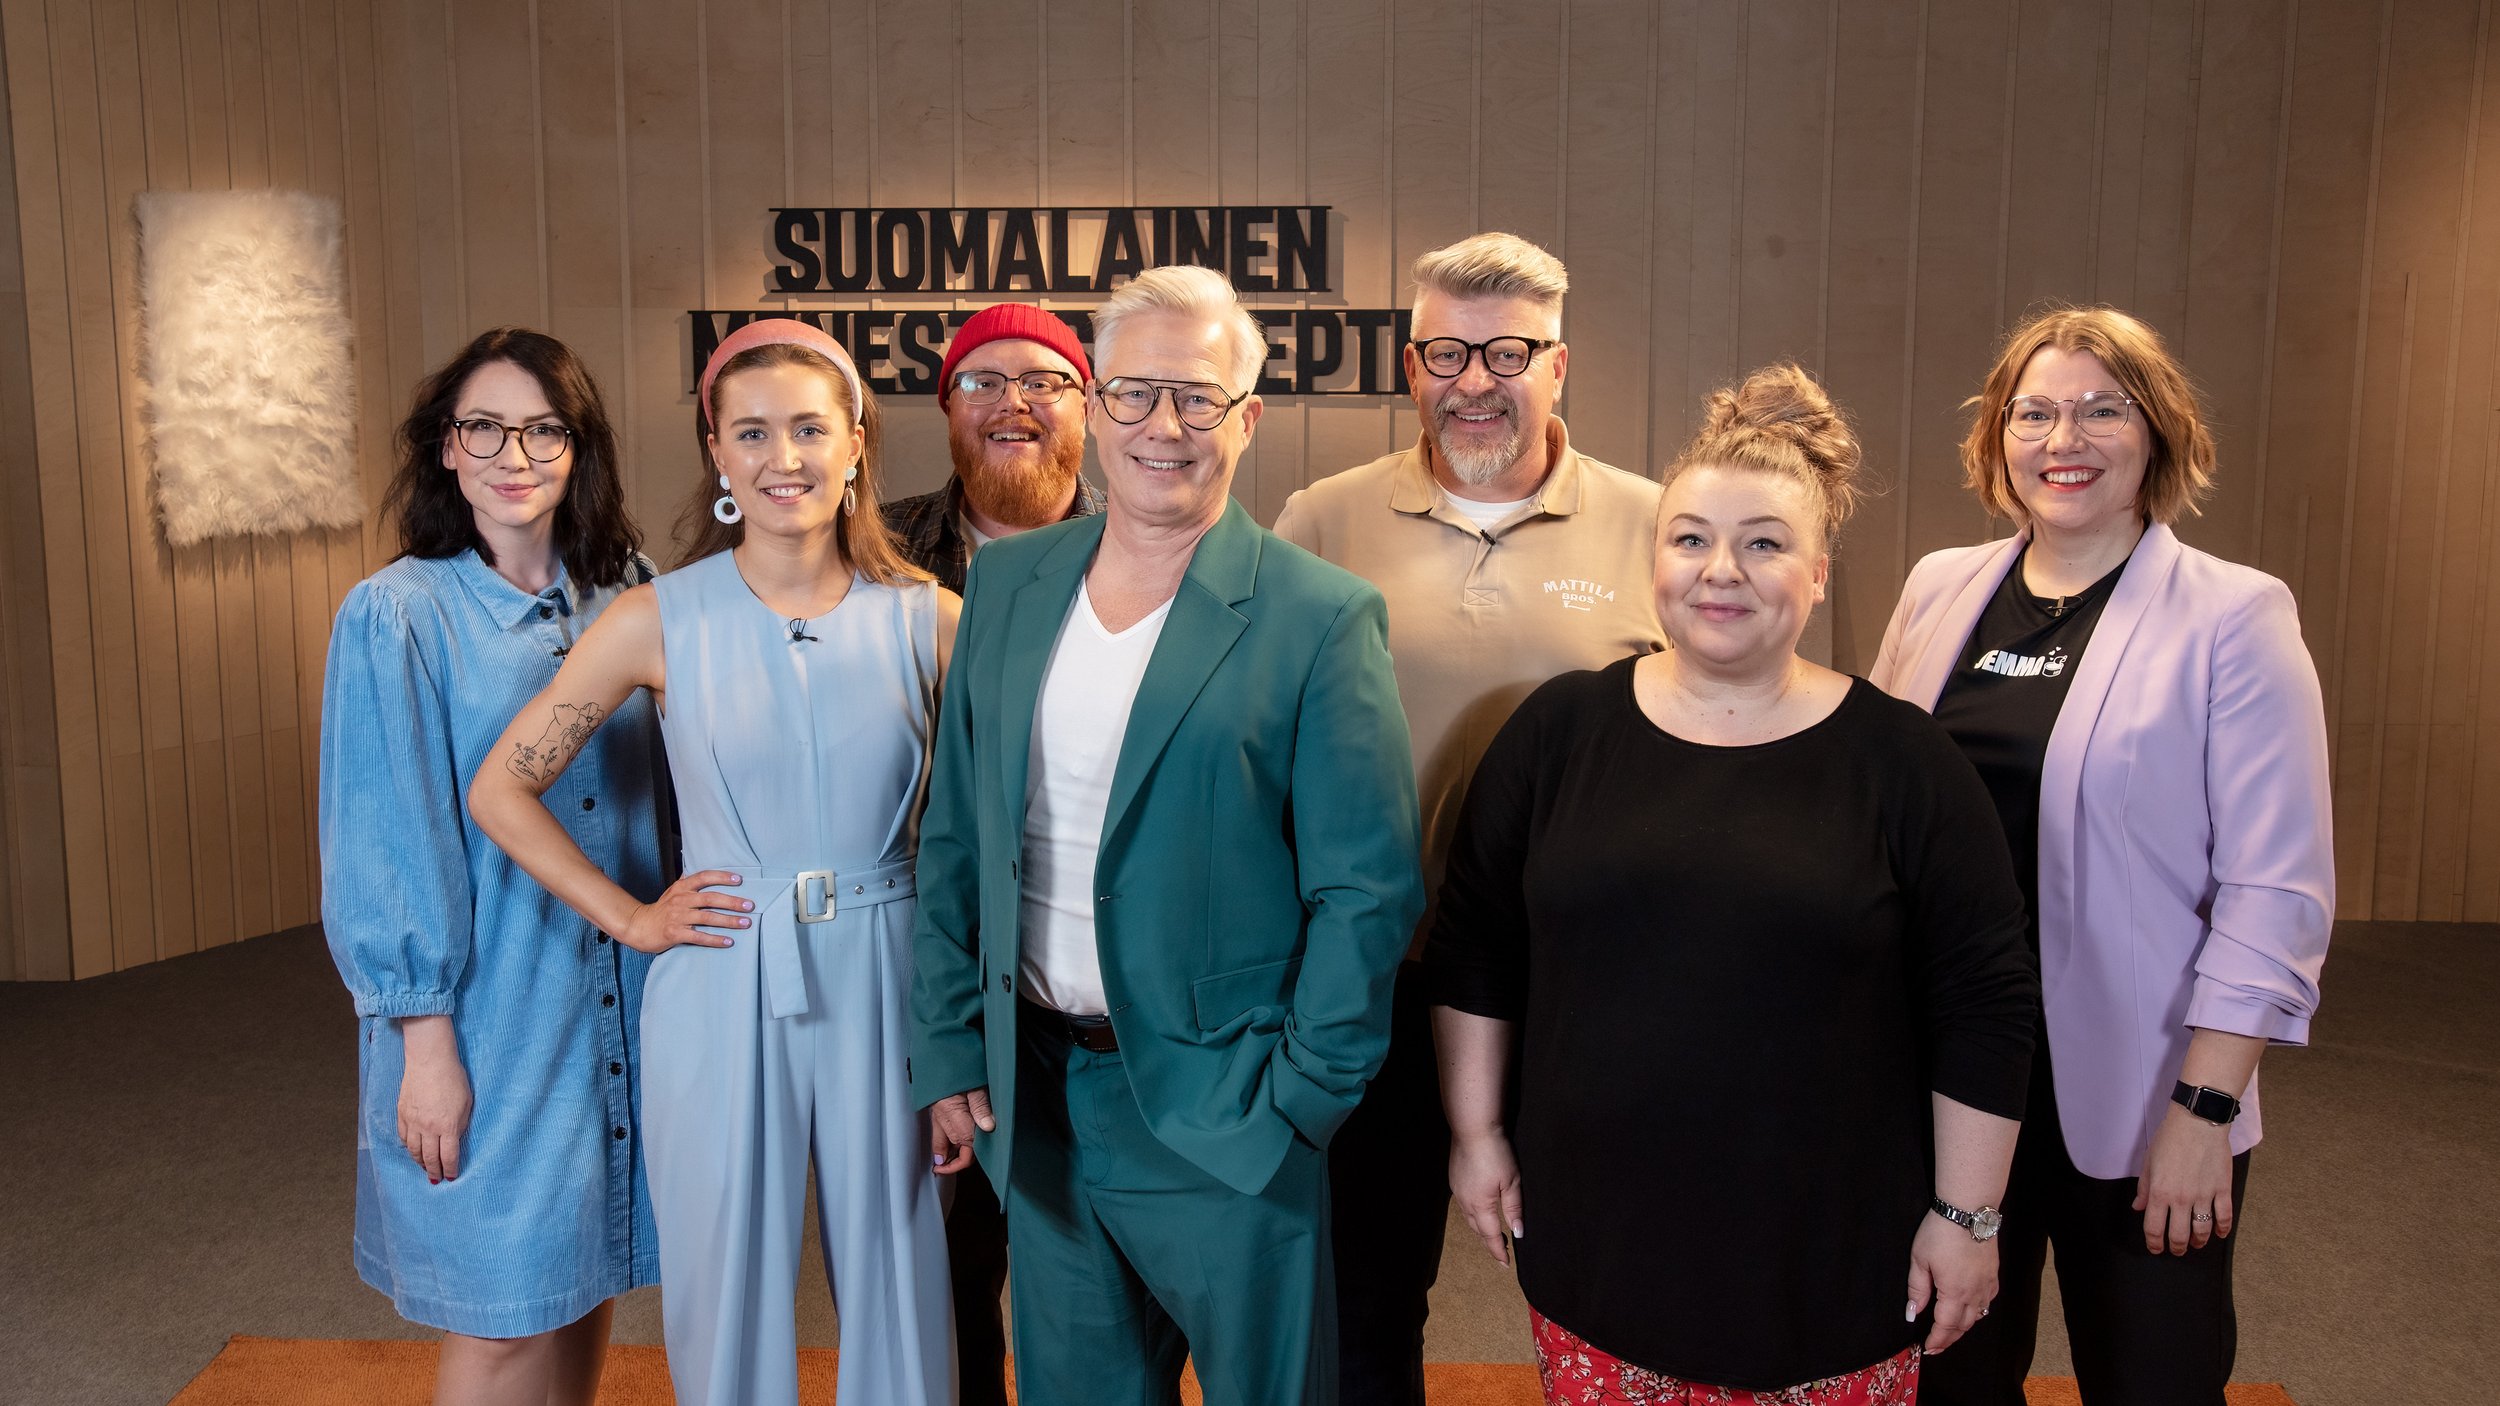 Suomalainen menestysresepti, season 4 / Mediawan Finland  (📷: Saku Tiainen / SOK &amp; MTV)